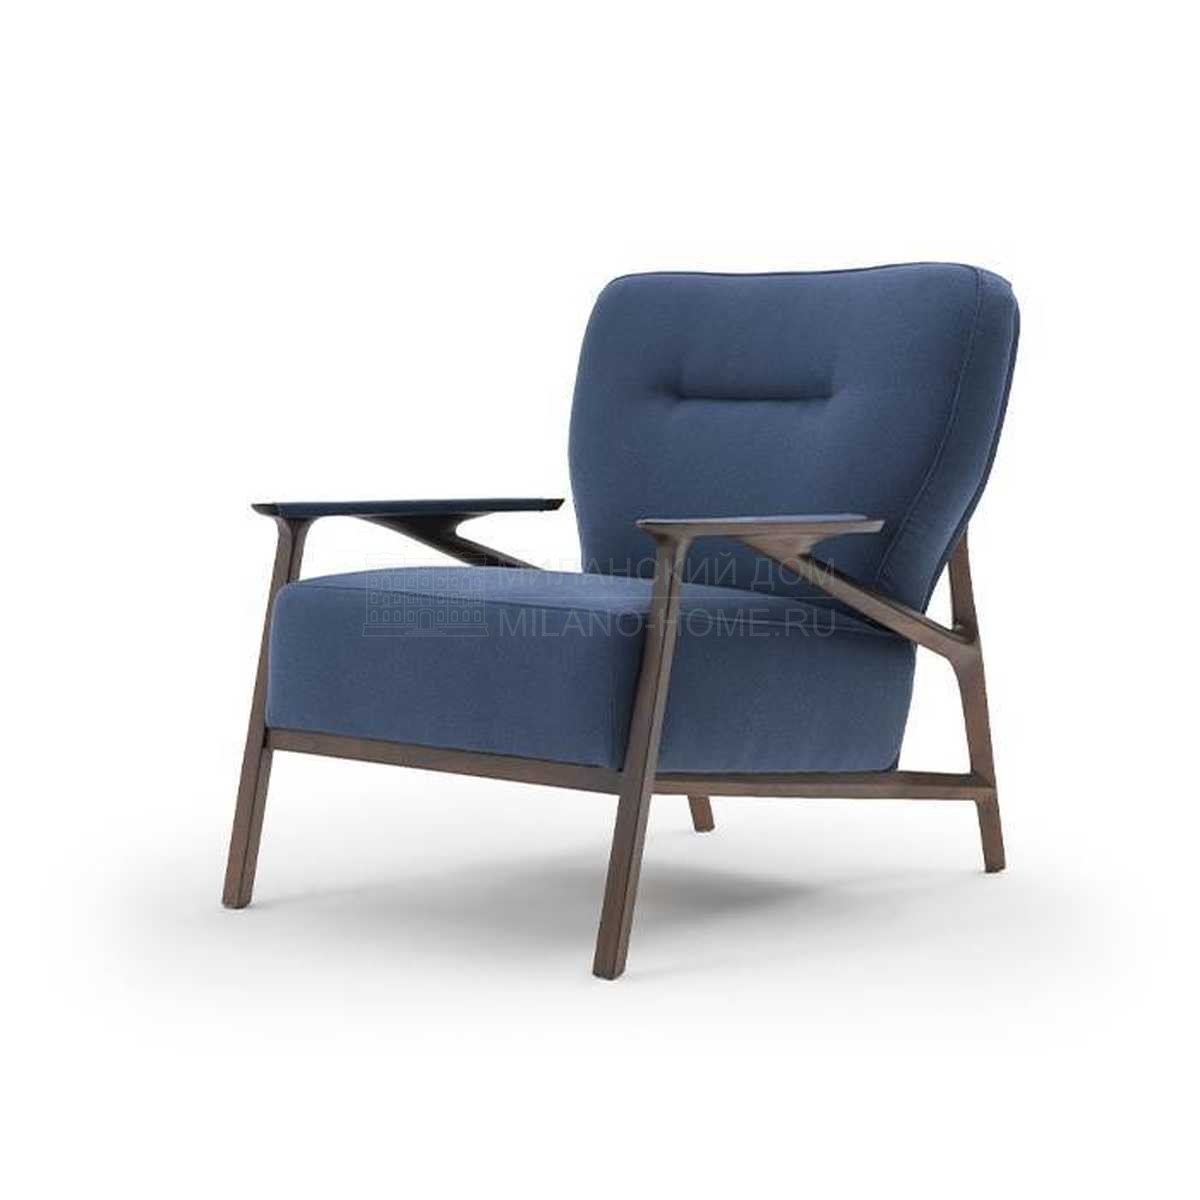 Лаунж кресло Vine armchair из Италии фабрики TURRI